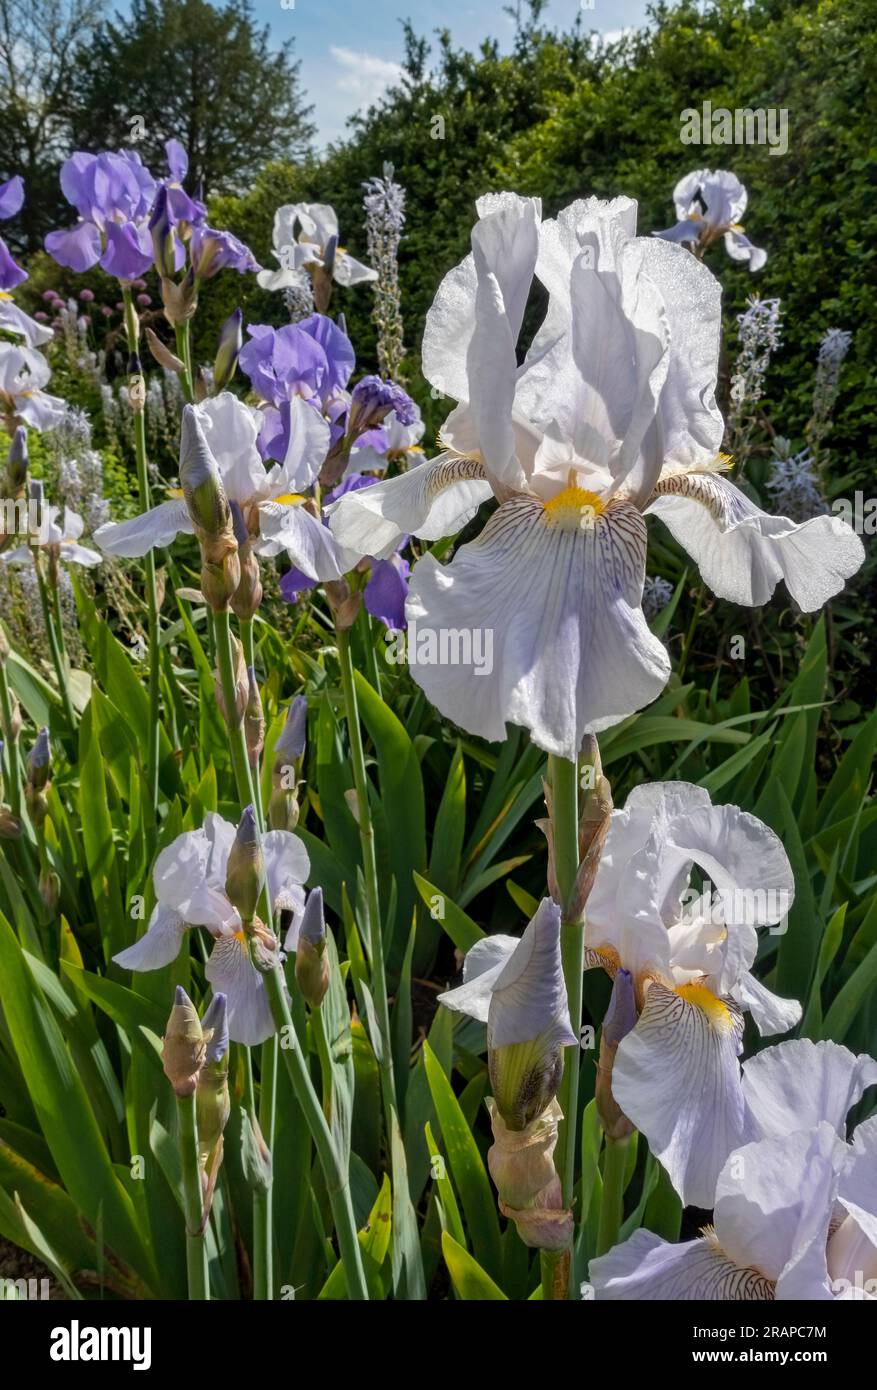 Gros plan de blanc et violet iris barbu iris iris fleurs fleurir dans un jardin frontière en été Angleterre Royaume-Uni Grande-Bretagne Banque D'Images